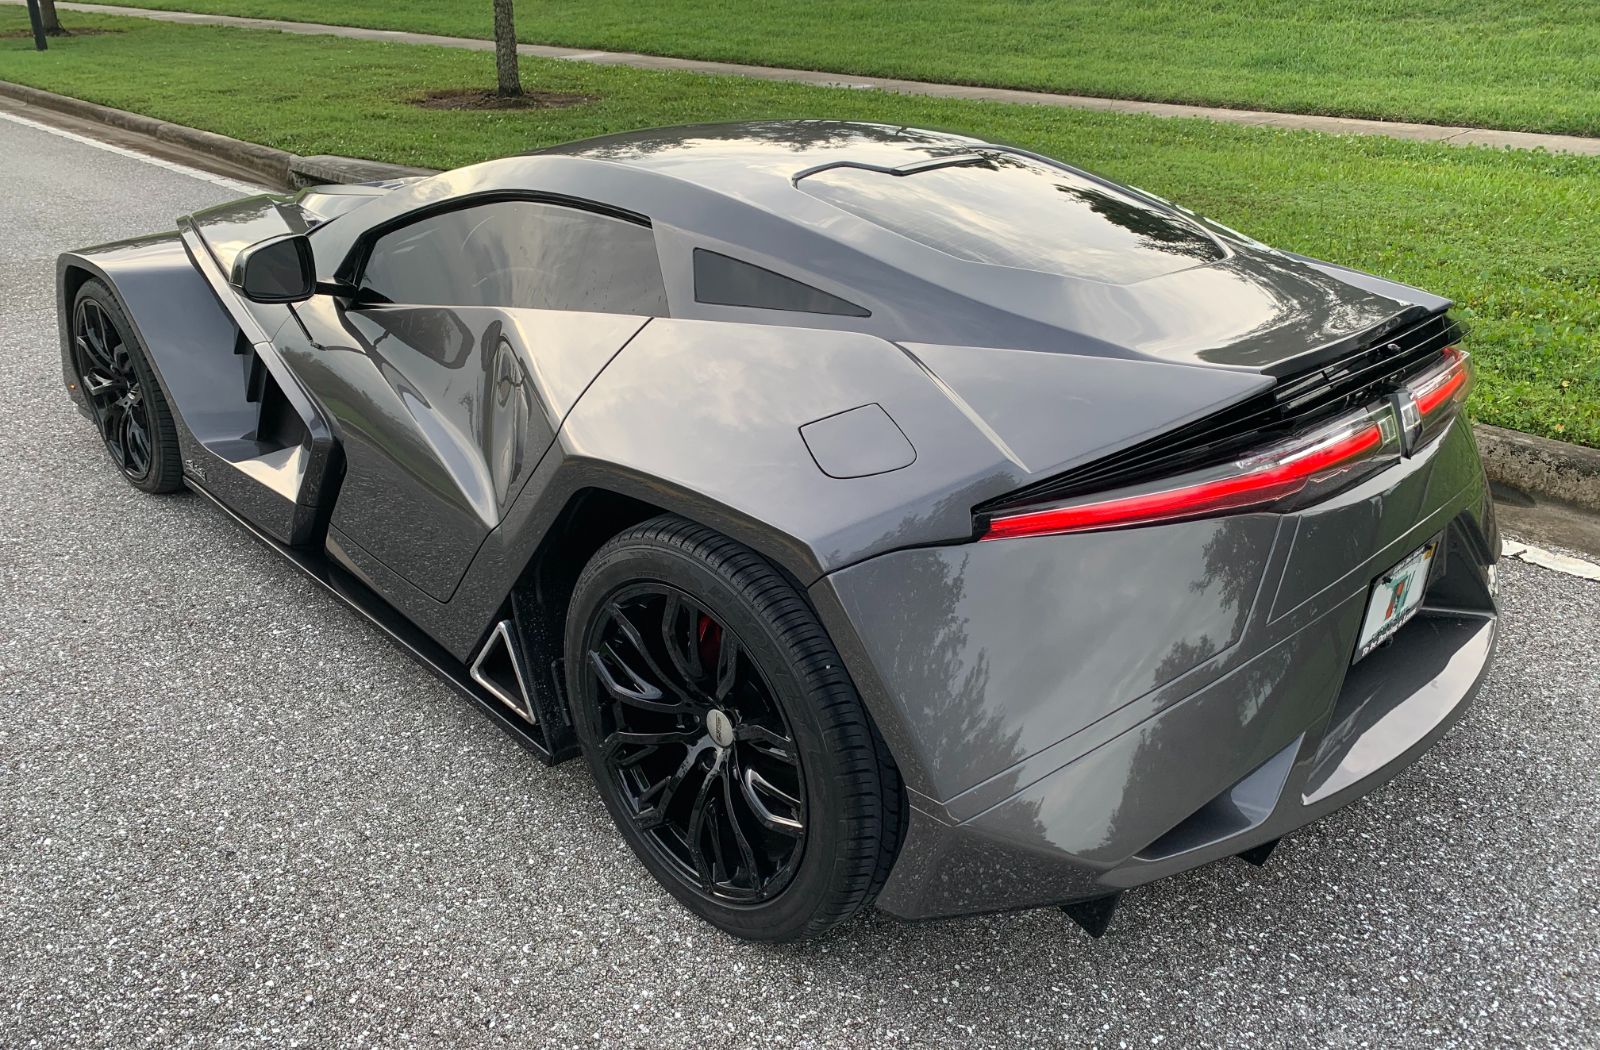 The Vetter Slash - a custom built, C6 Corvette Concept from the imagination of Mike Vetter!